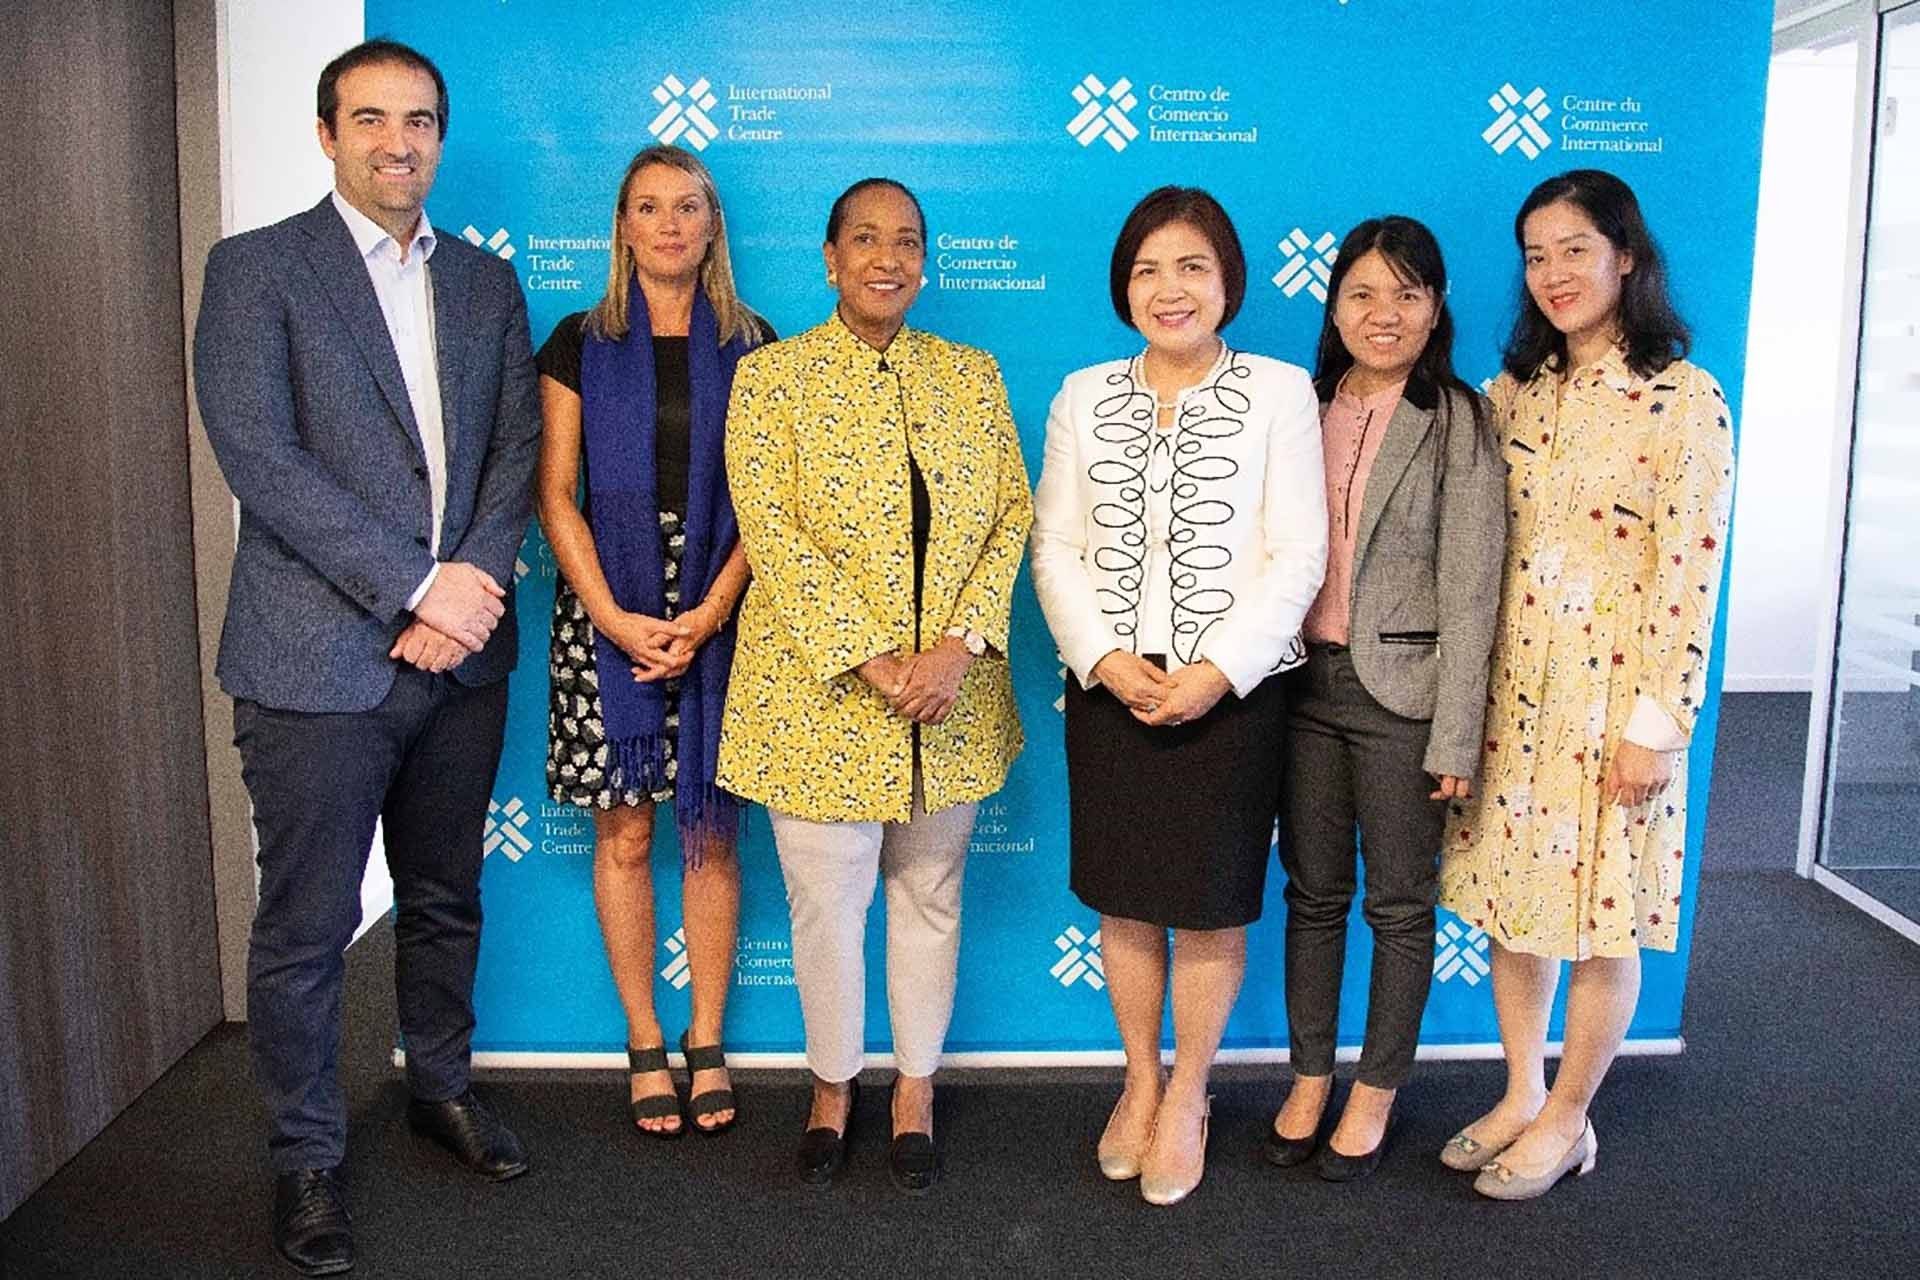 Đại sứ Lê Thị Tuyết Mai (thứ 3 từ phải sang trái) và cán bộ Phái đoàn gặp làm việc với Giám đốc điều hành ITC Pamela Coke-Hamilton (thứ 4 từ phải sang trái) và cán bộ của ITC, ngày 14/7 tại trụ sở ITC ở Geneva. (Nguồn: ITC)